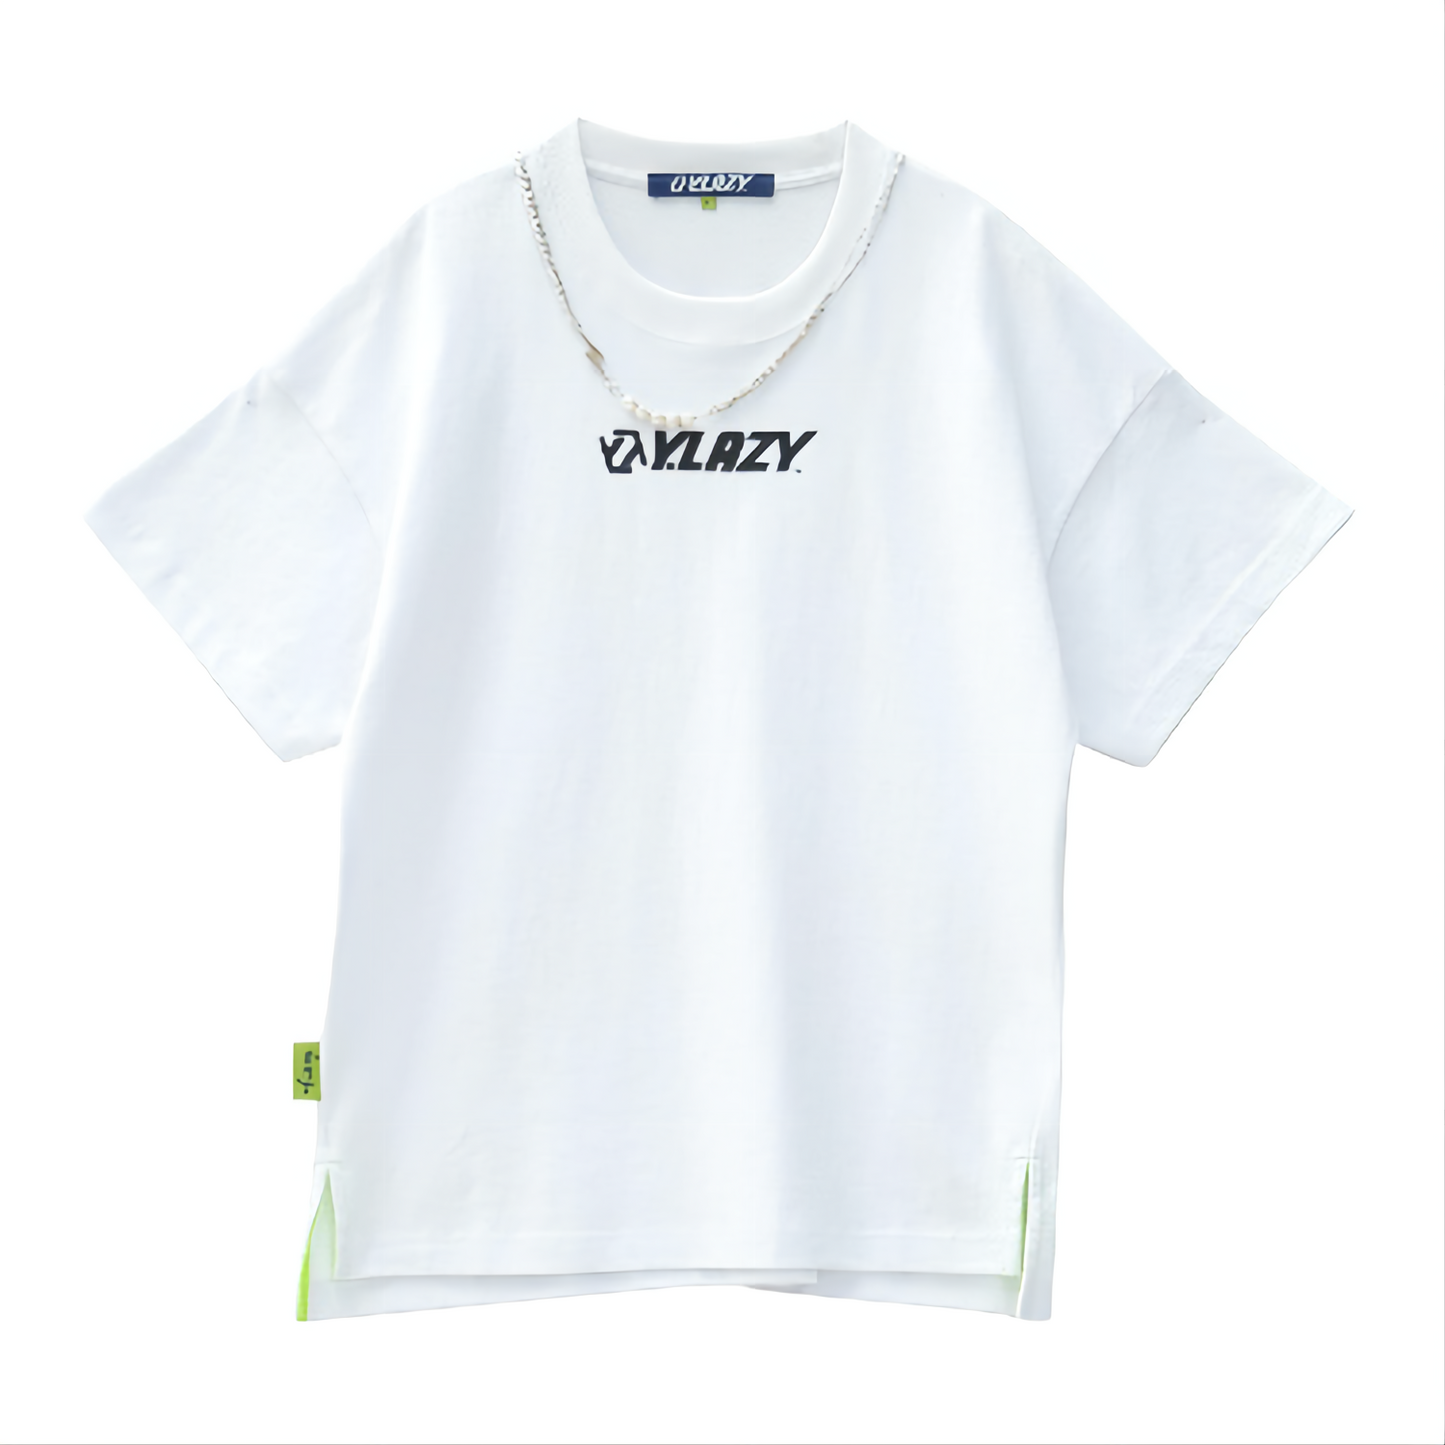 Y.Lazy Fashion Chains T-Shirt White